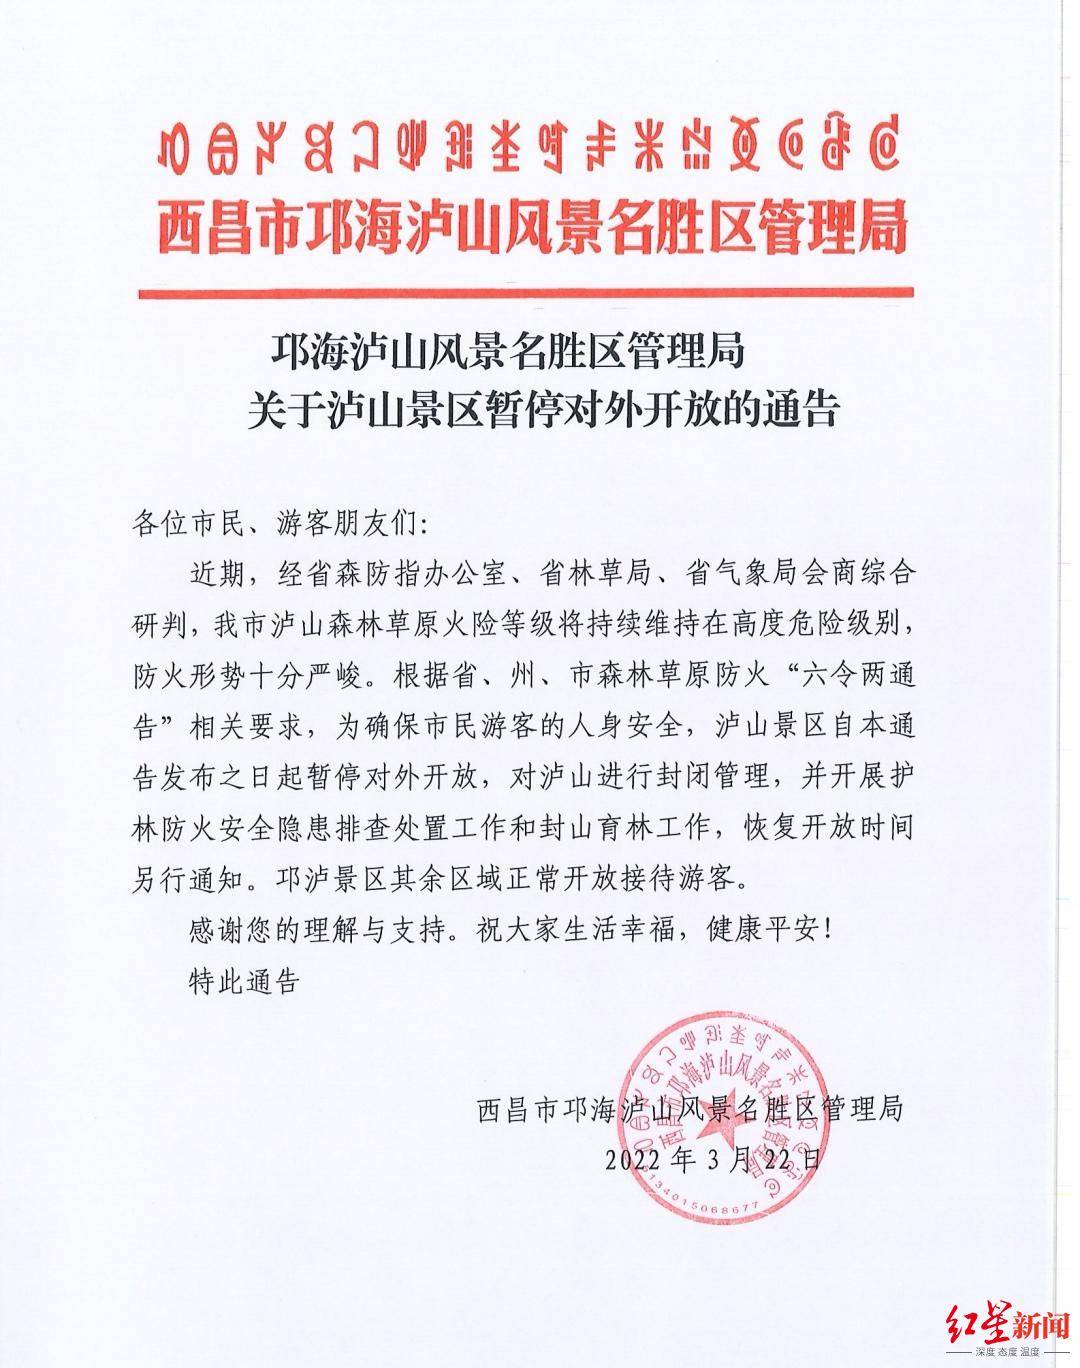 暂停|3月22日起，西昌泸山景区暂停对外开放，对泸山进行封闭管理